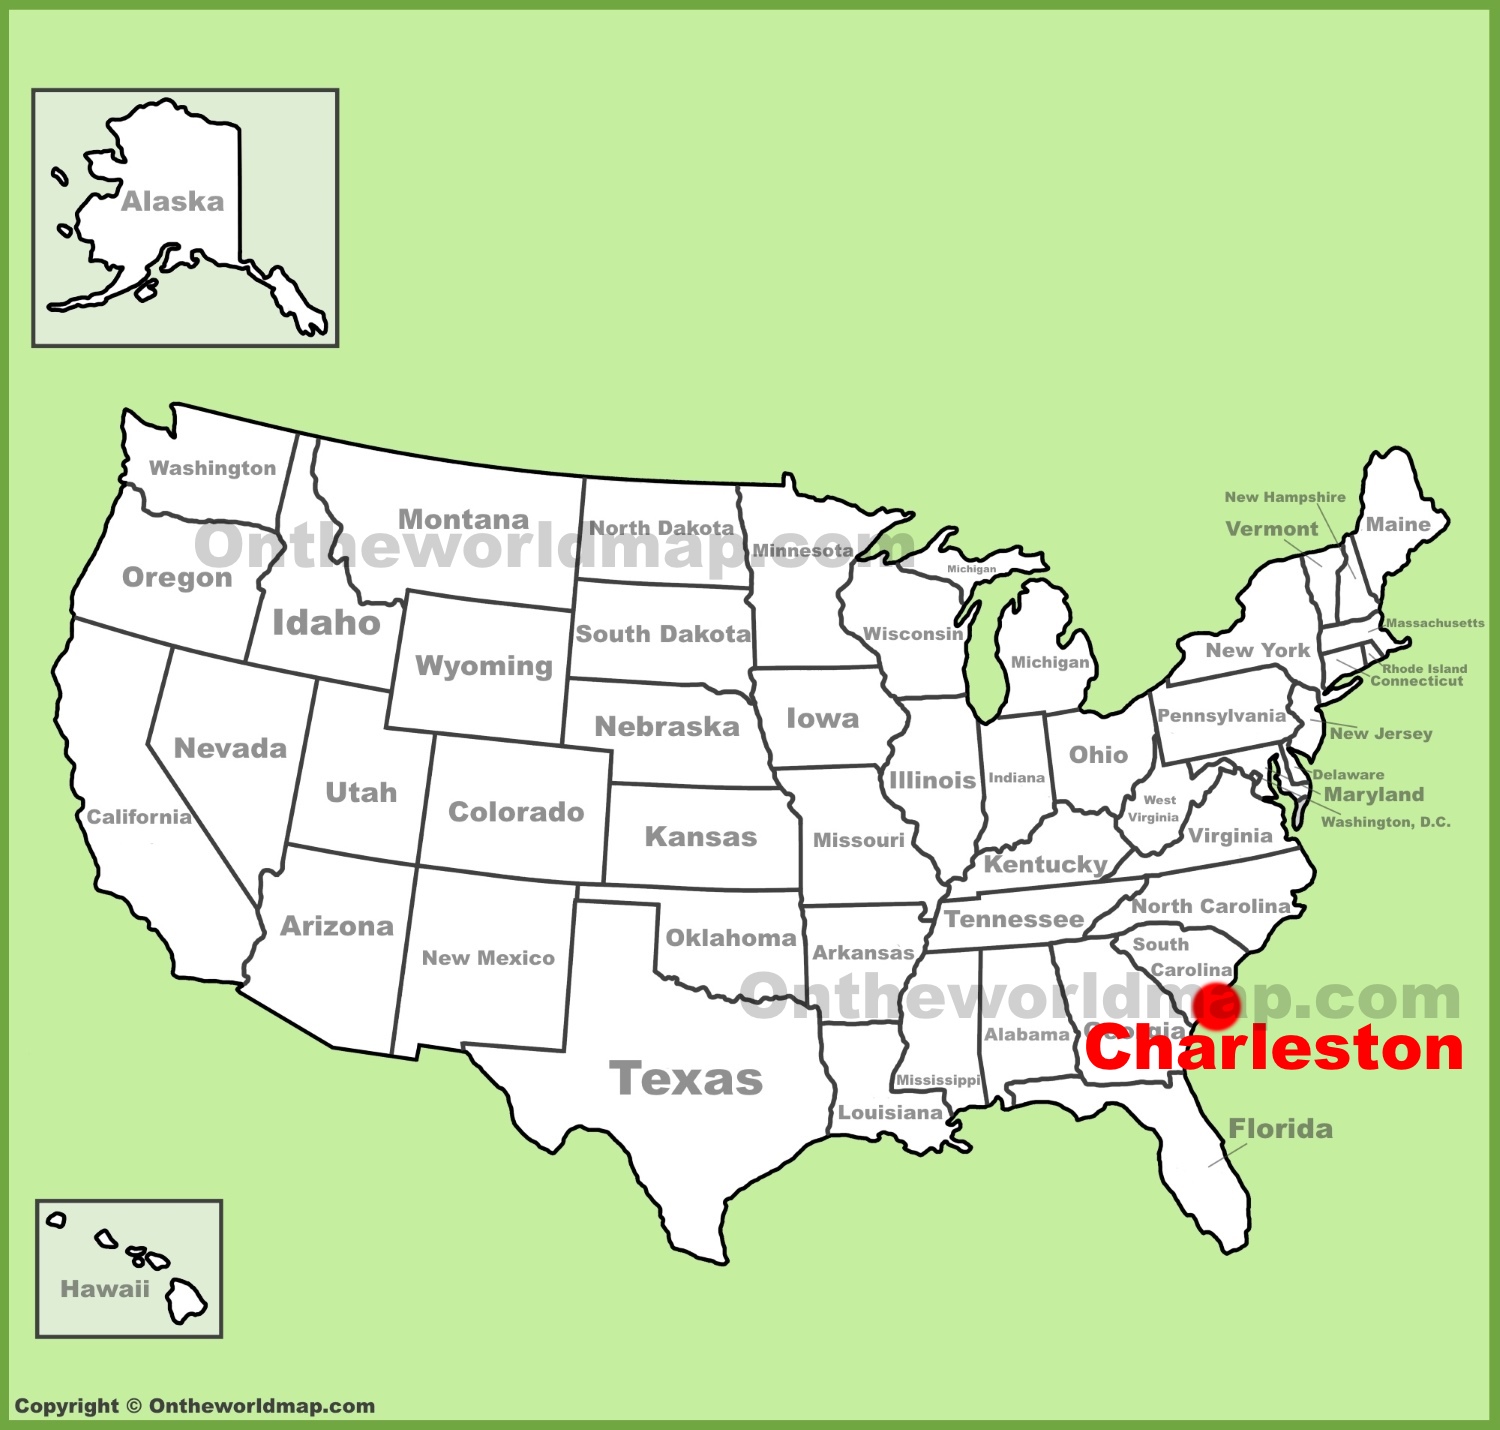 Charleston 